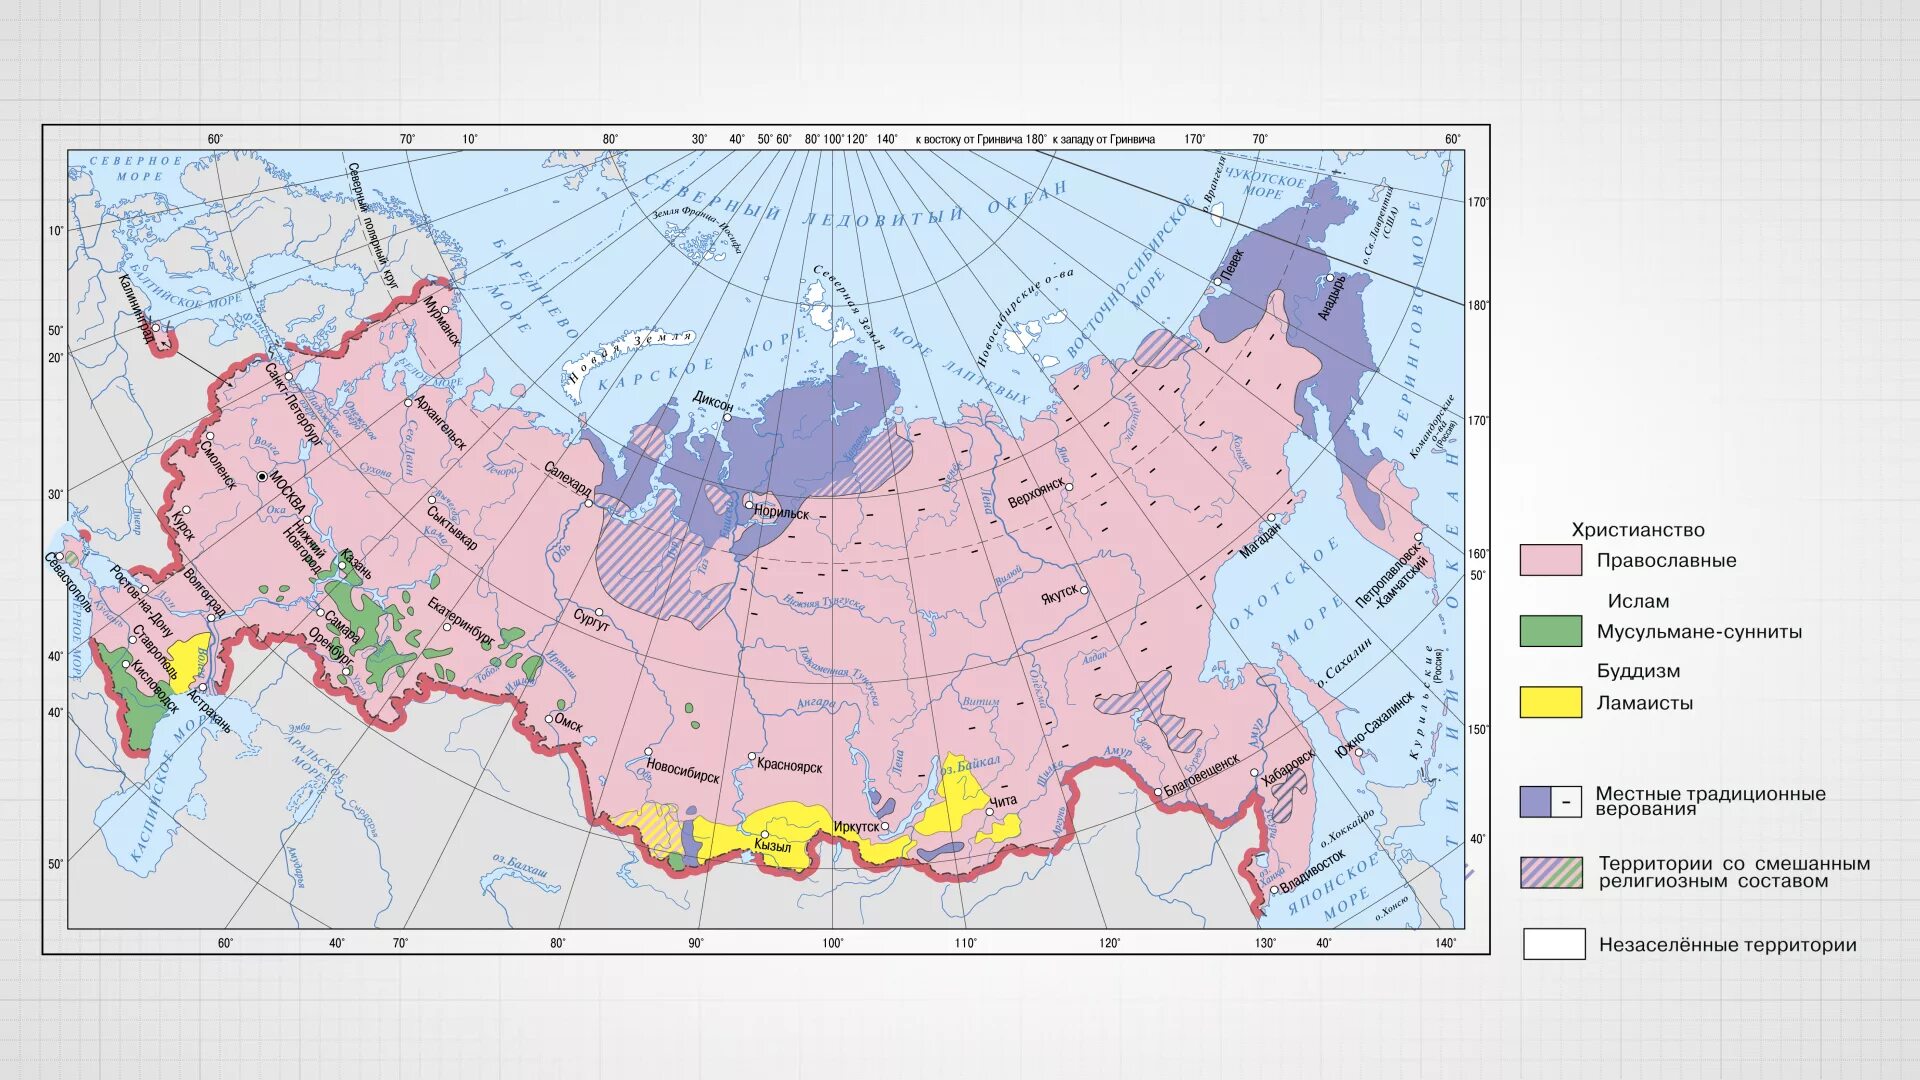 География религий россии 8 класс